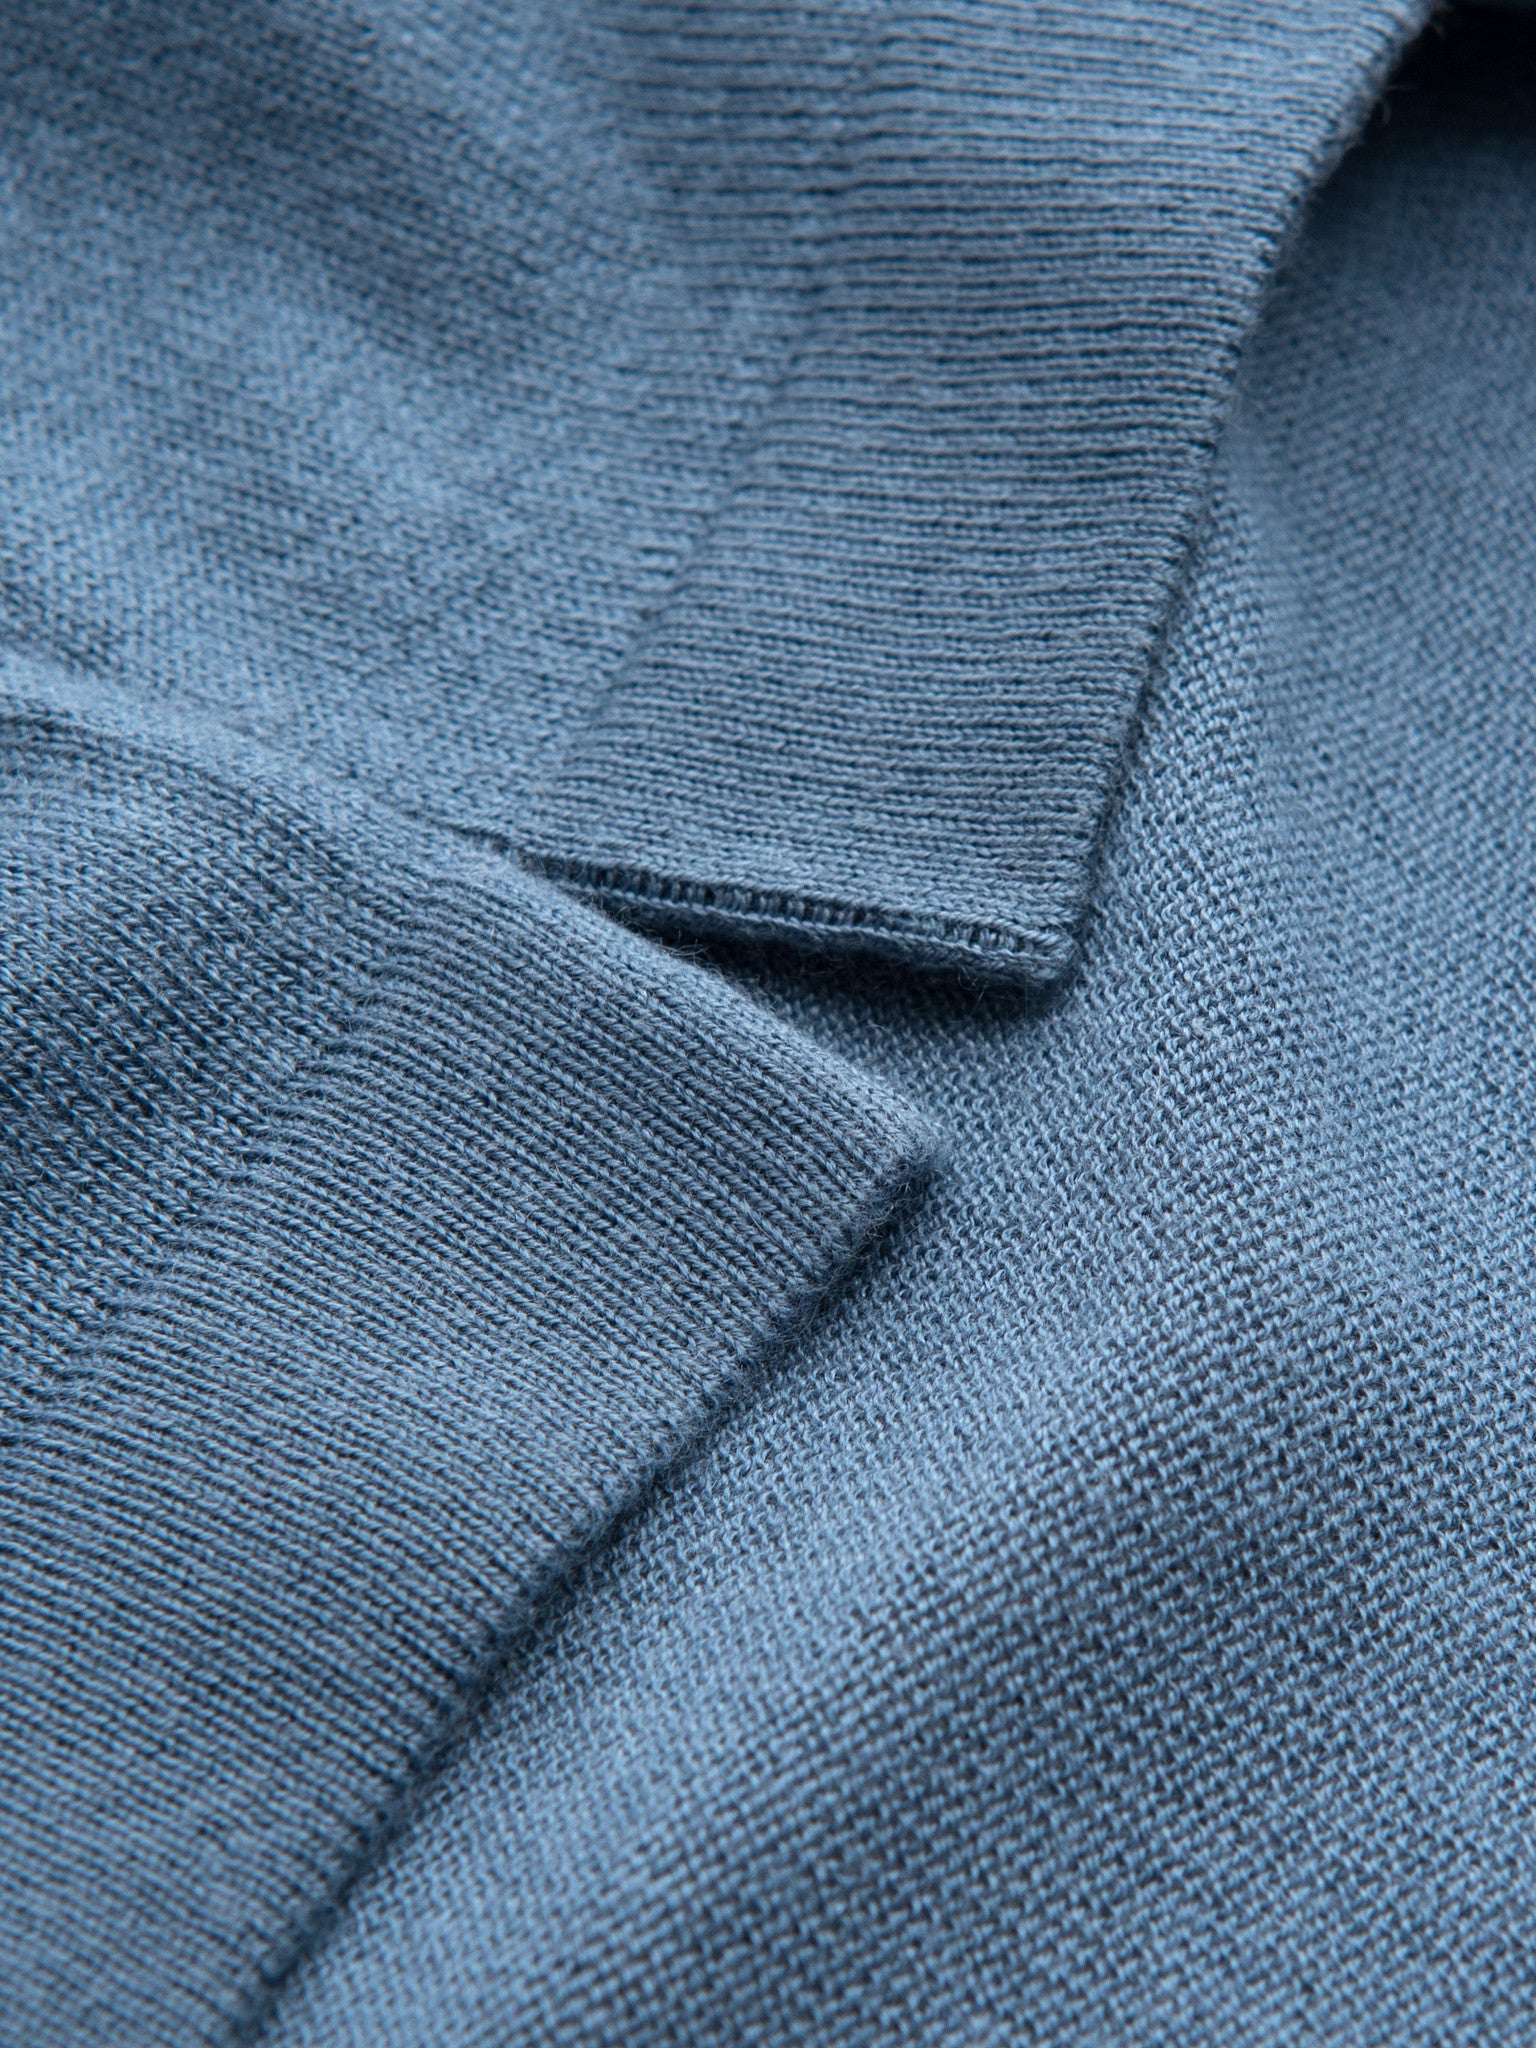 Short Sleeve Polo - Denim